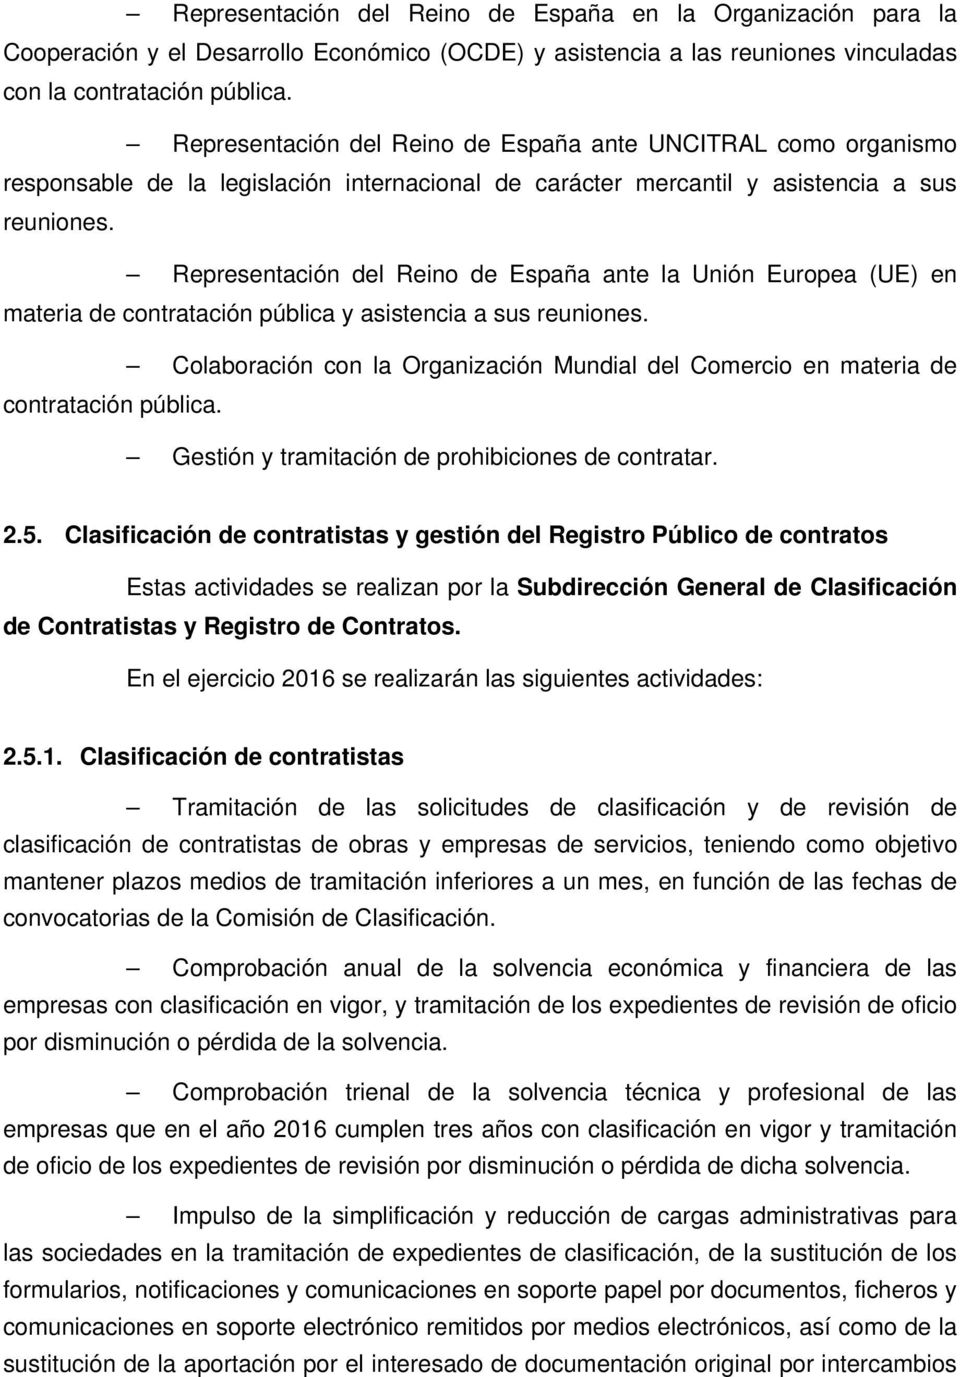 Representación del Reino de España ante la Unión Europea (UE) en materia de contratación pública y asistencia a sus reuniones.